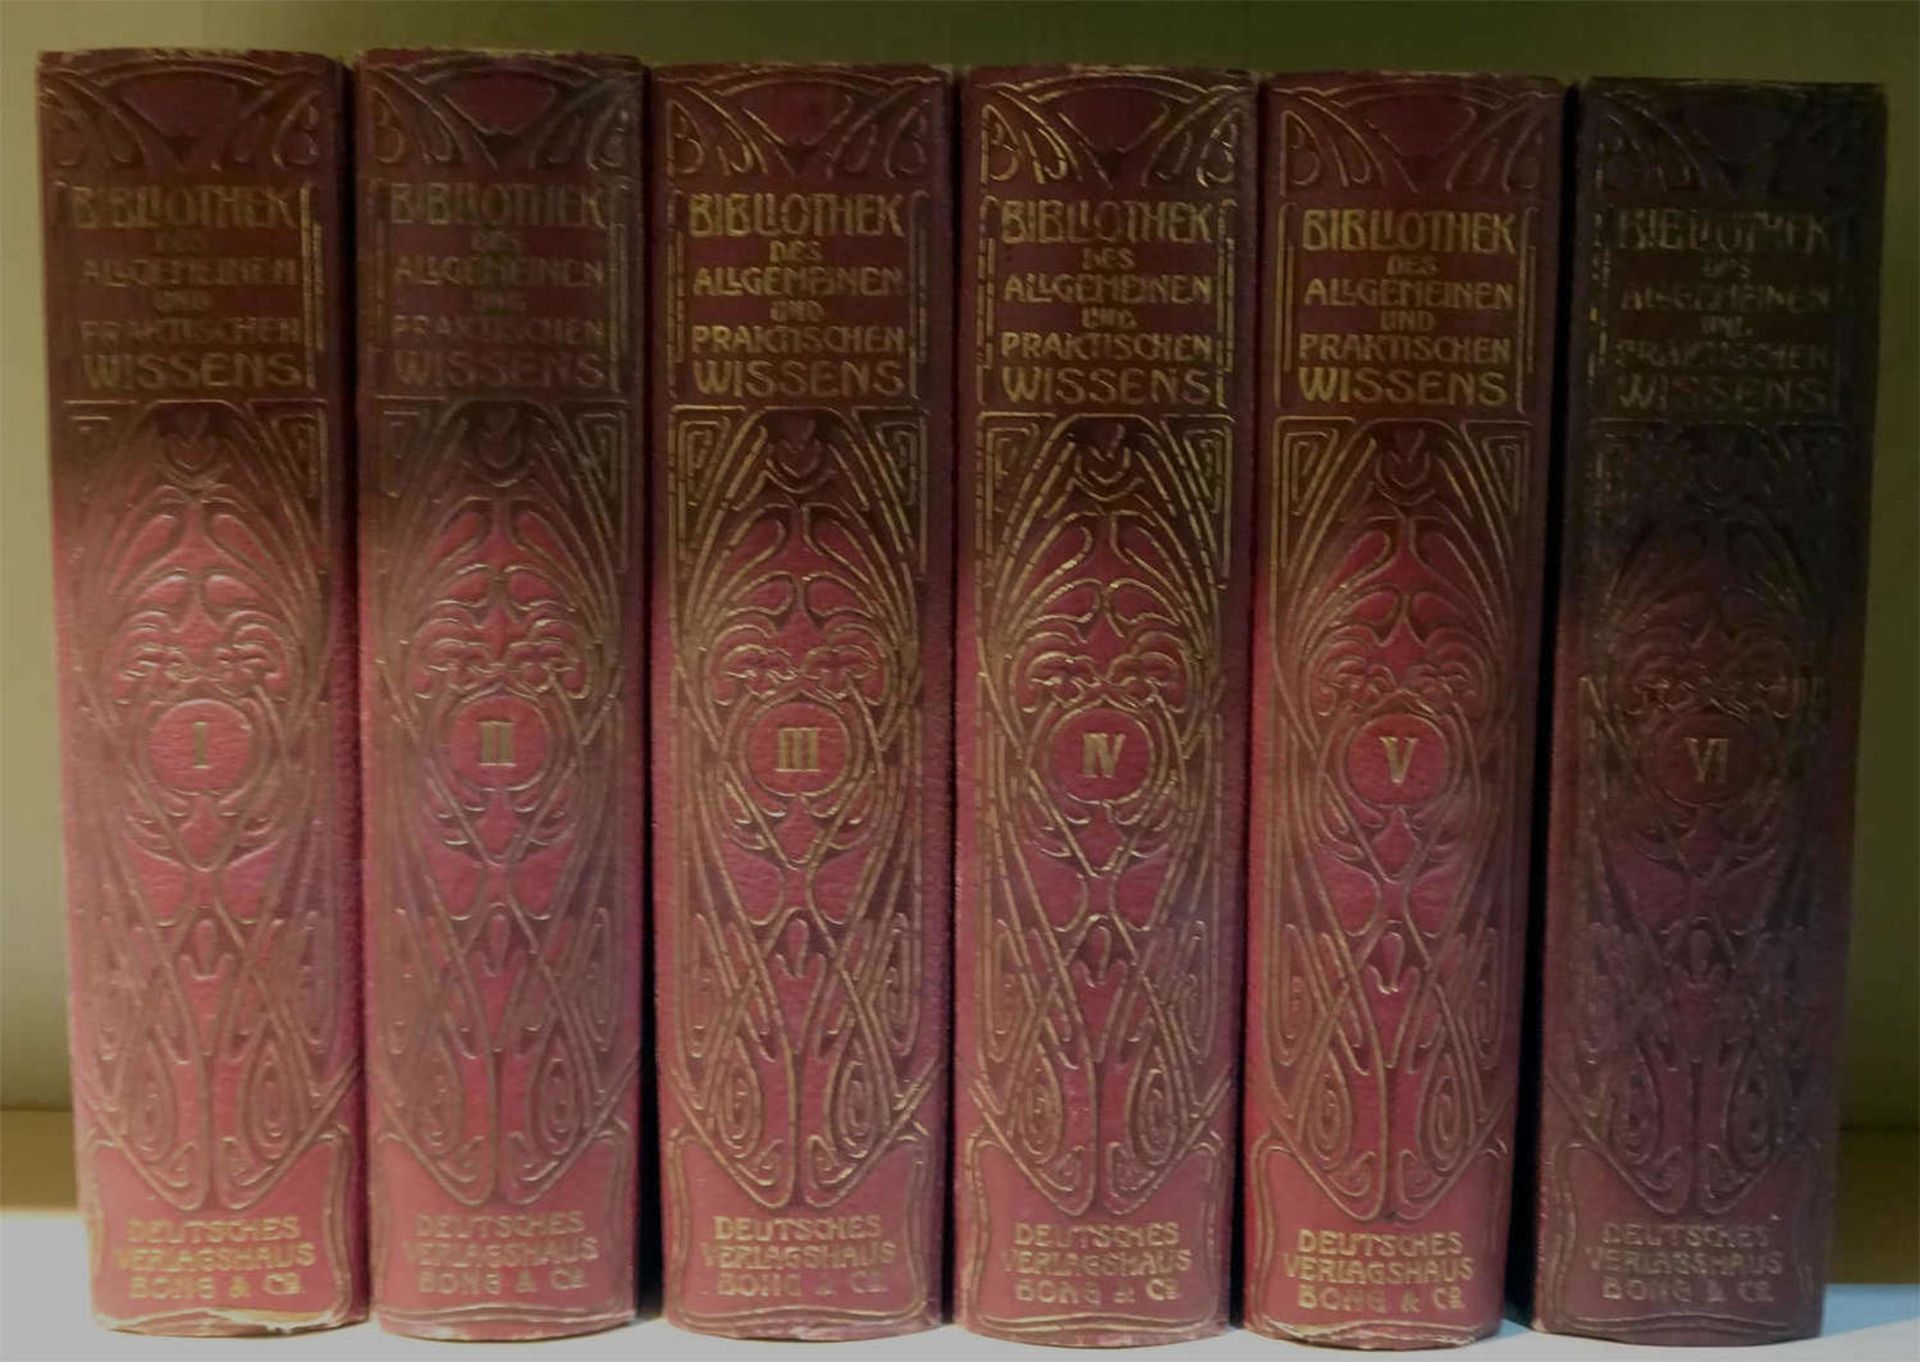 Bibilothek des allgemeinen und praktischen Wissens, Band 1-6 von Emanuel Müller-Baden.Library of